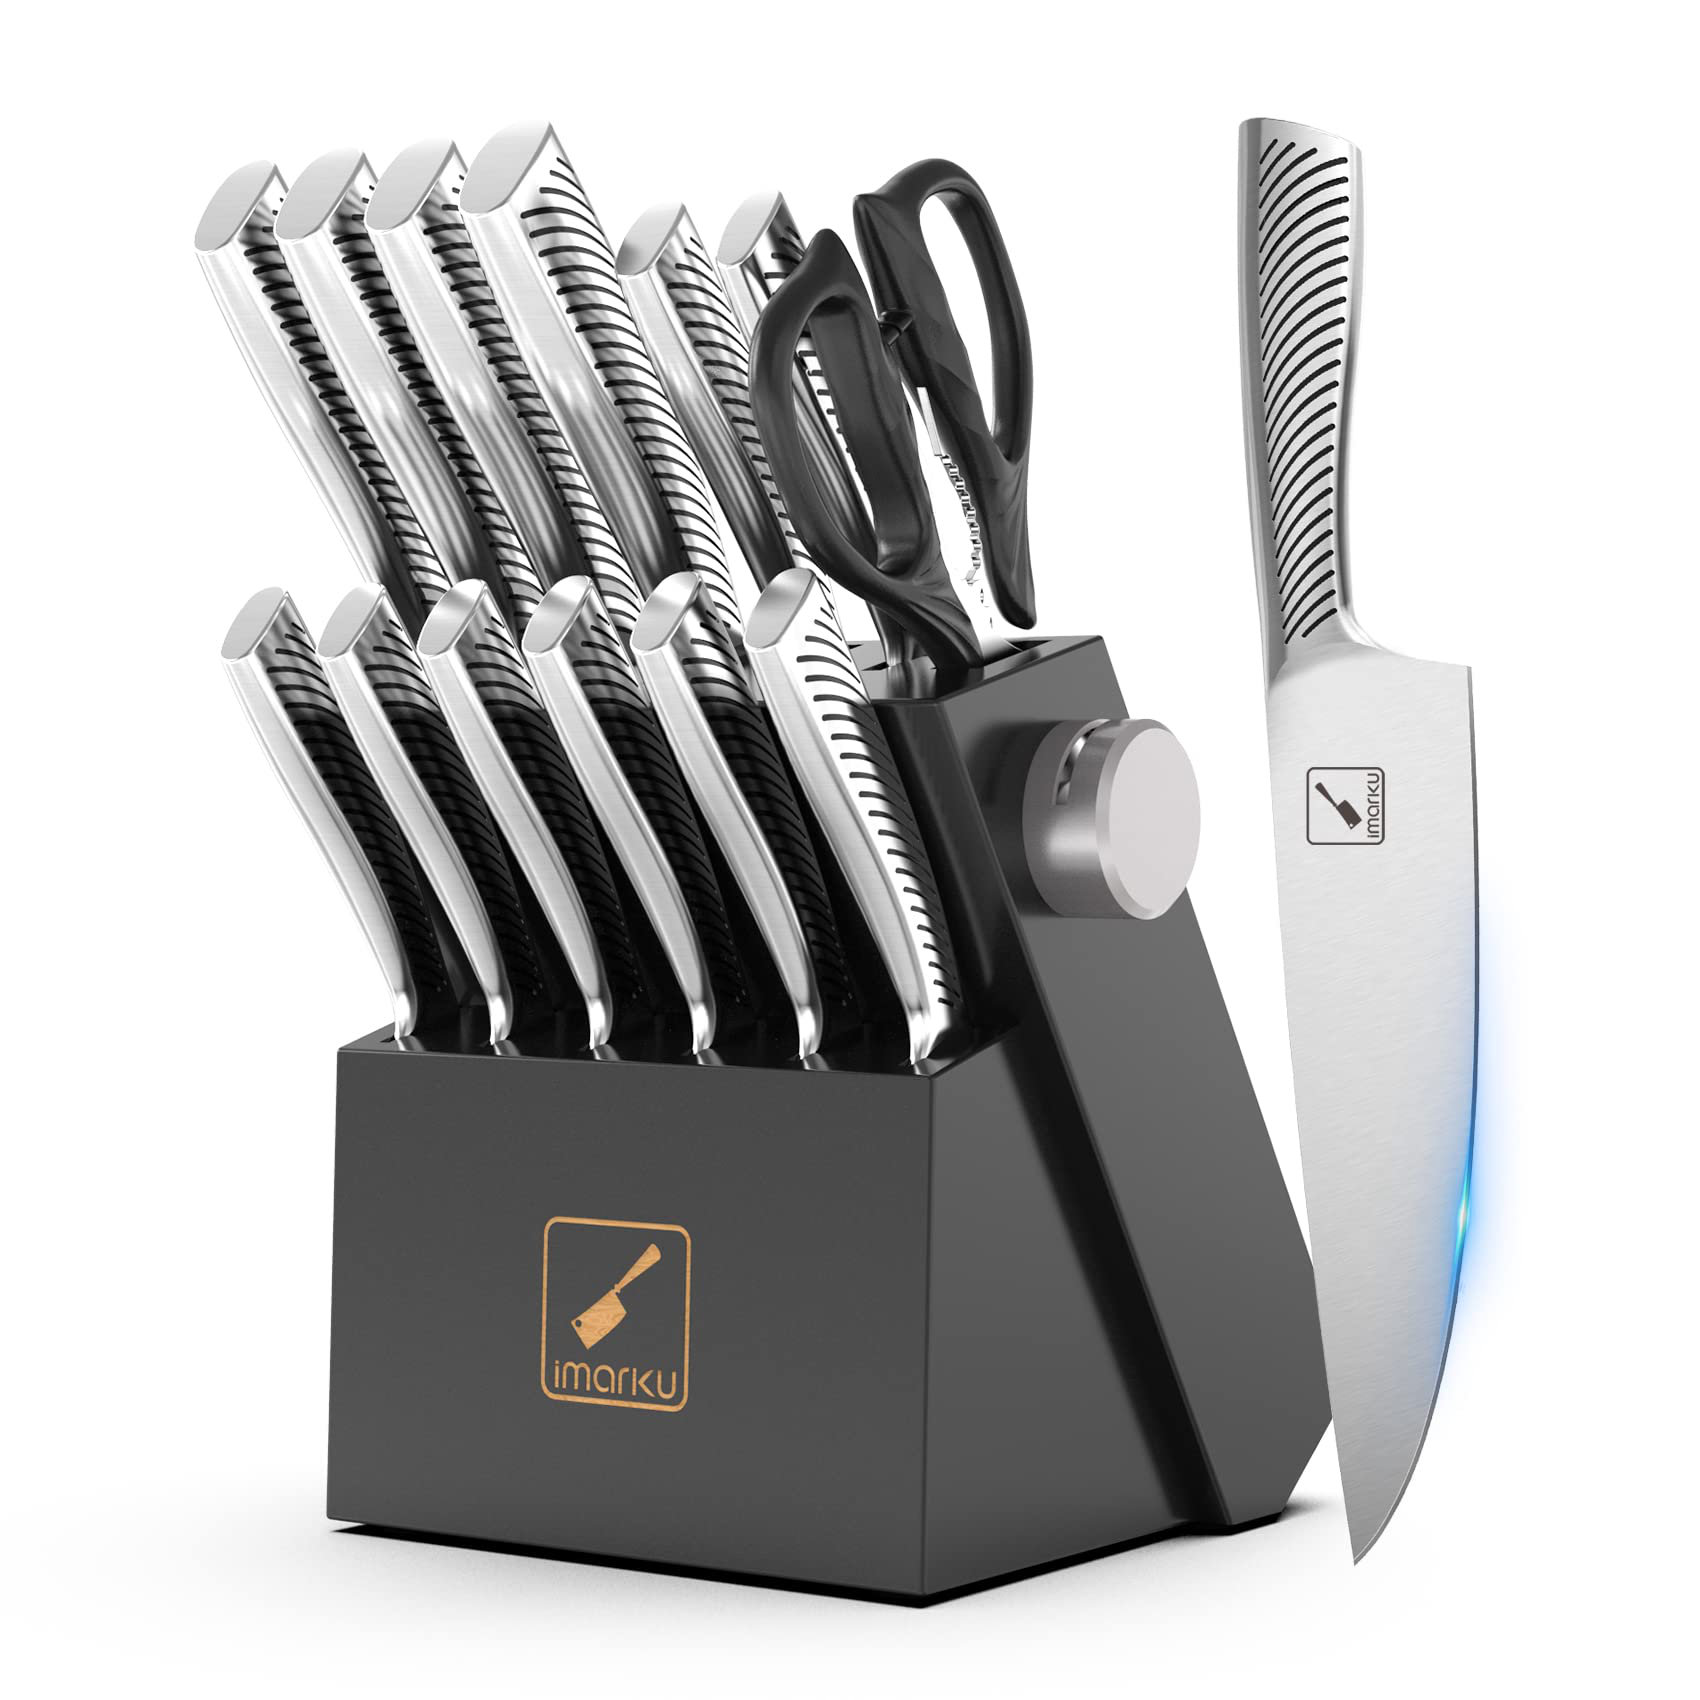 Flenc Kai Kitchen Knife Set 19 Pieces German Stainless Steel Knife